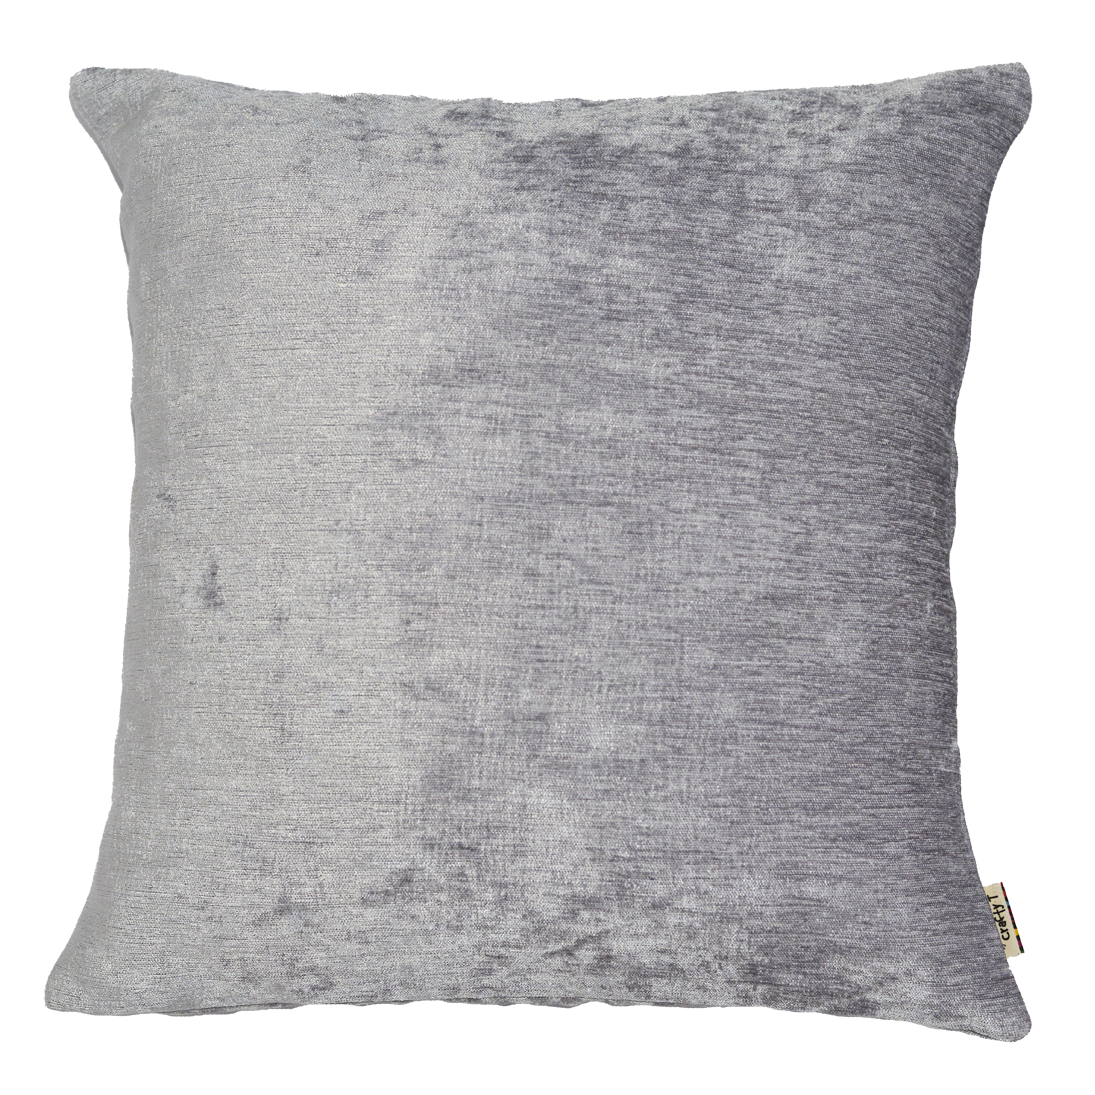 Silver velvet cushion cover - Harlan House & Home